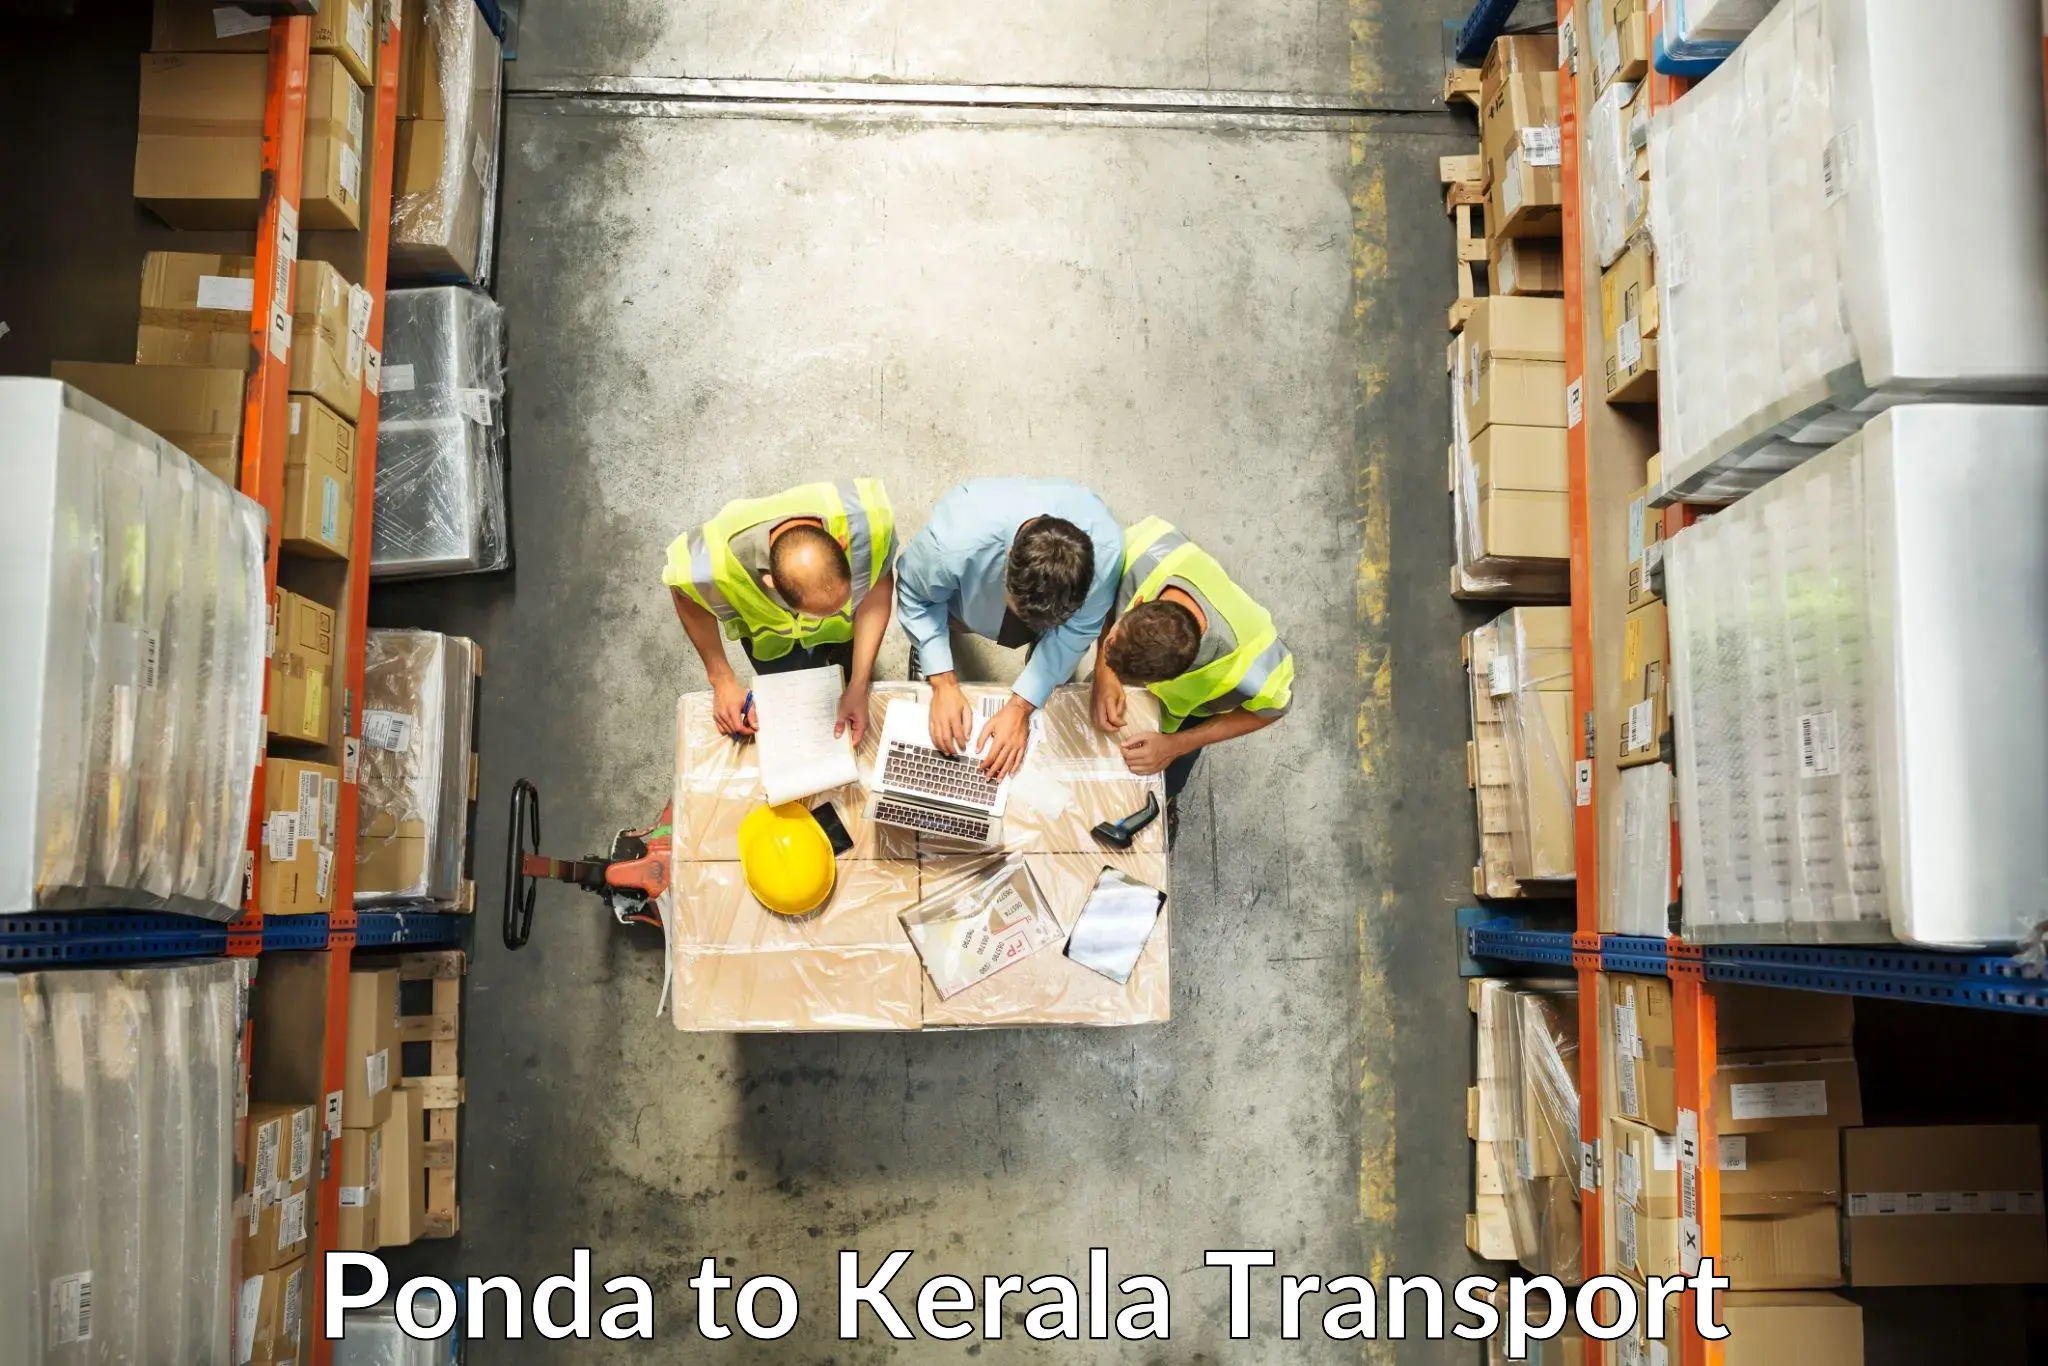 Transport shared services Ponda to Ponekkara